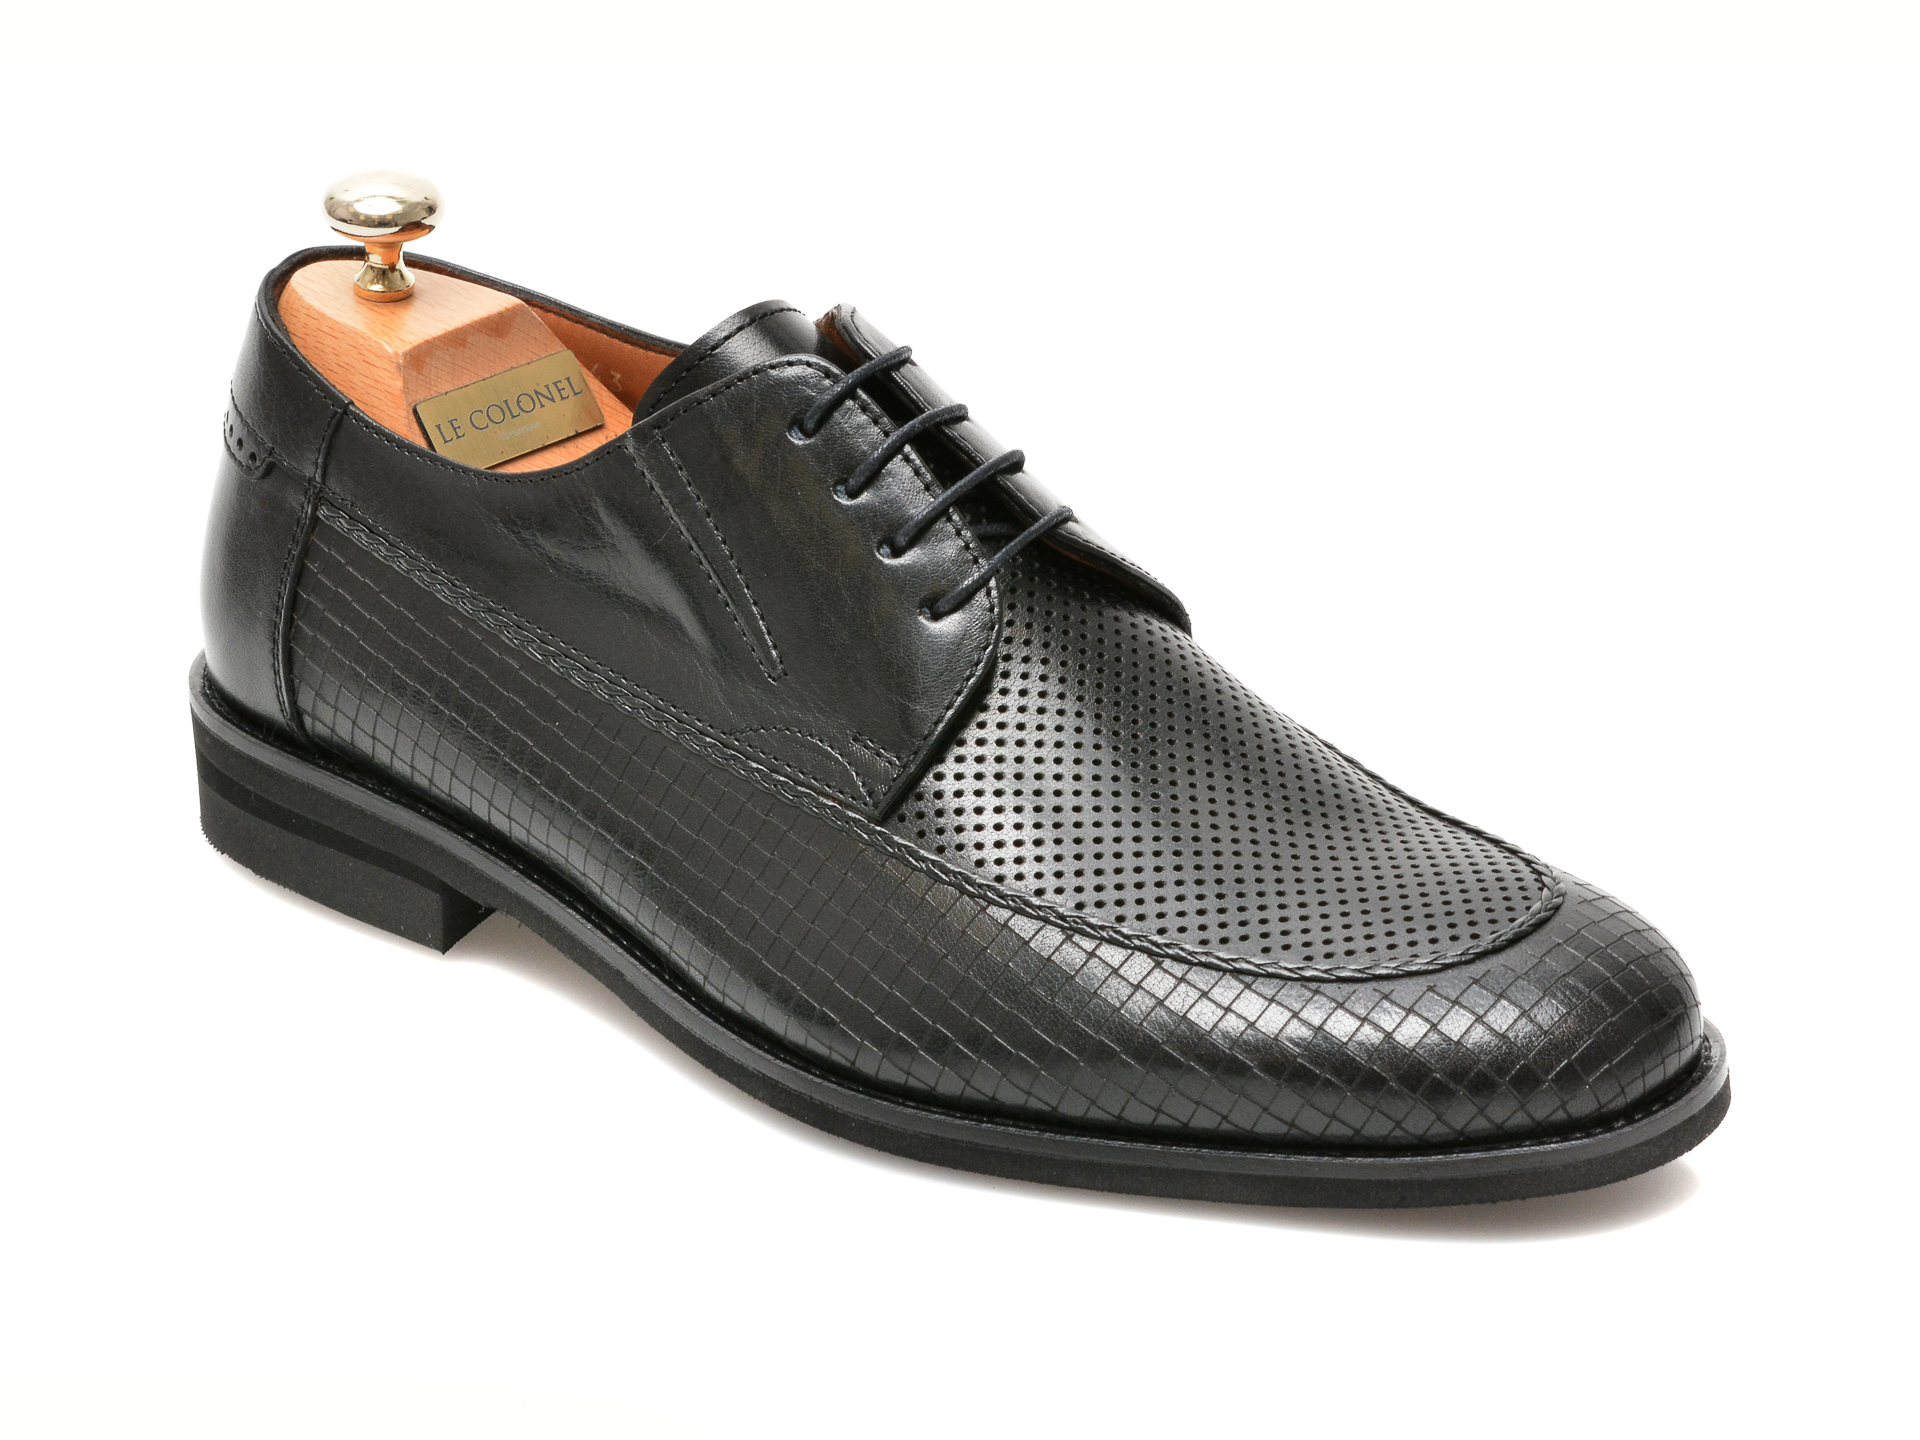 Pantofi LE COLONEL negri, 48856, din piele naturala 2022 ❤️ Pret Super otter.ro imagine noua 2022